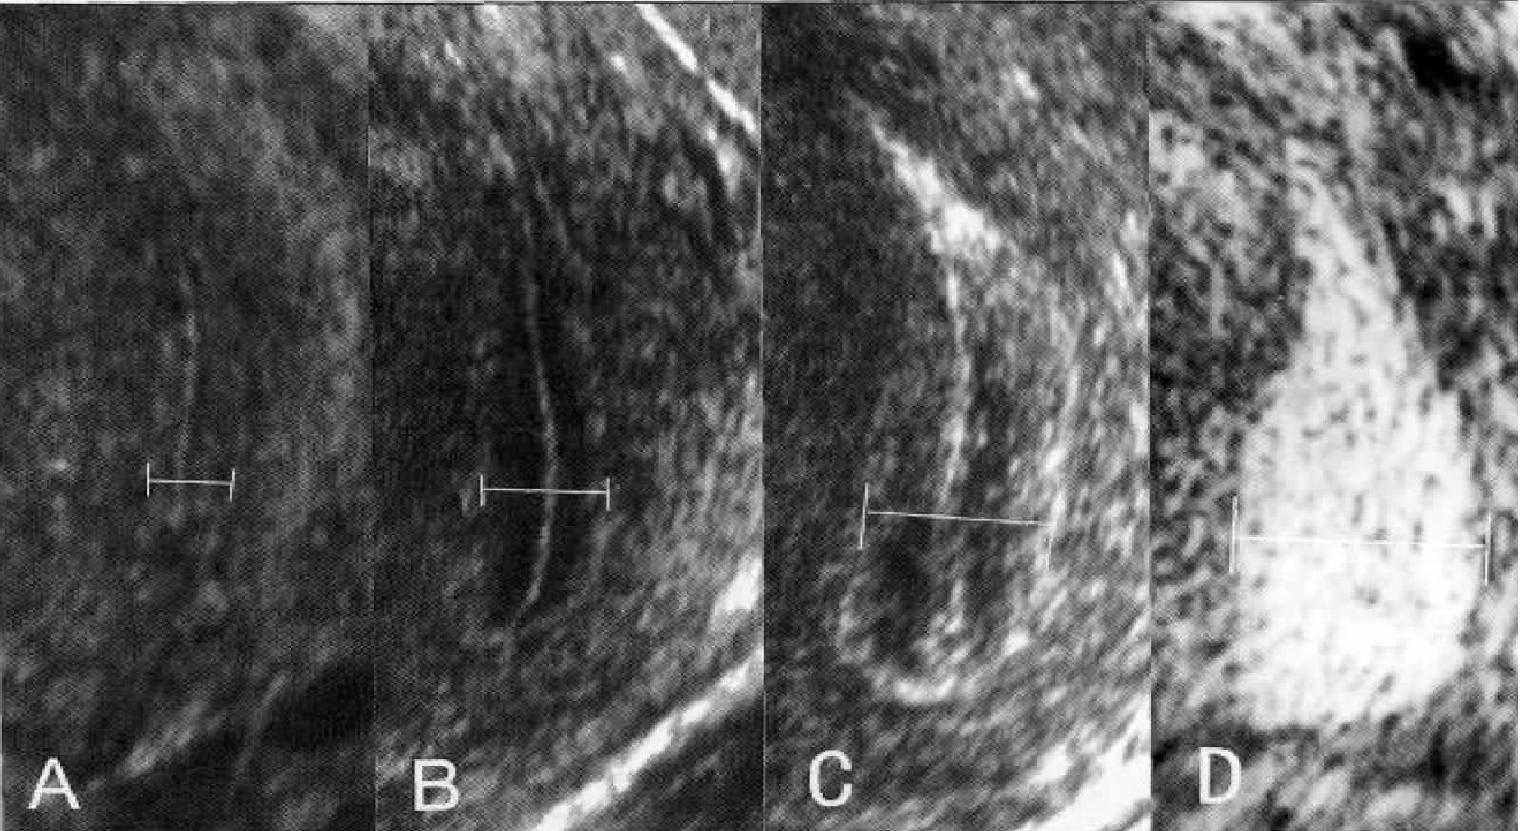 图2-49 子宫腔的形态(冠状切面)-妇产科临床解剖学-医学